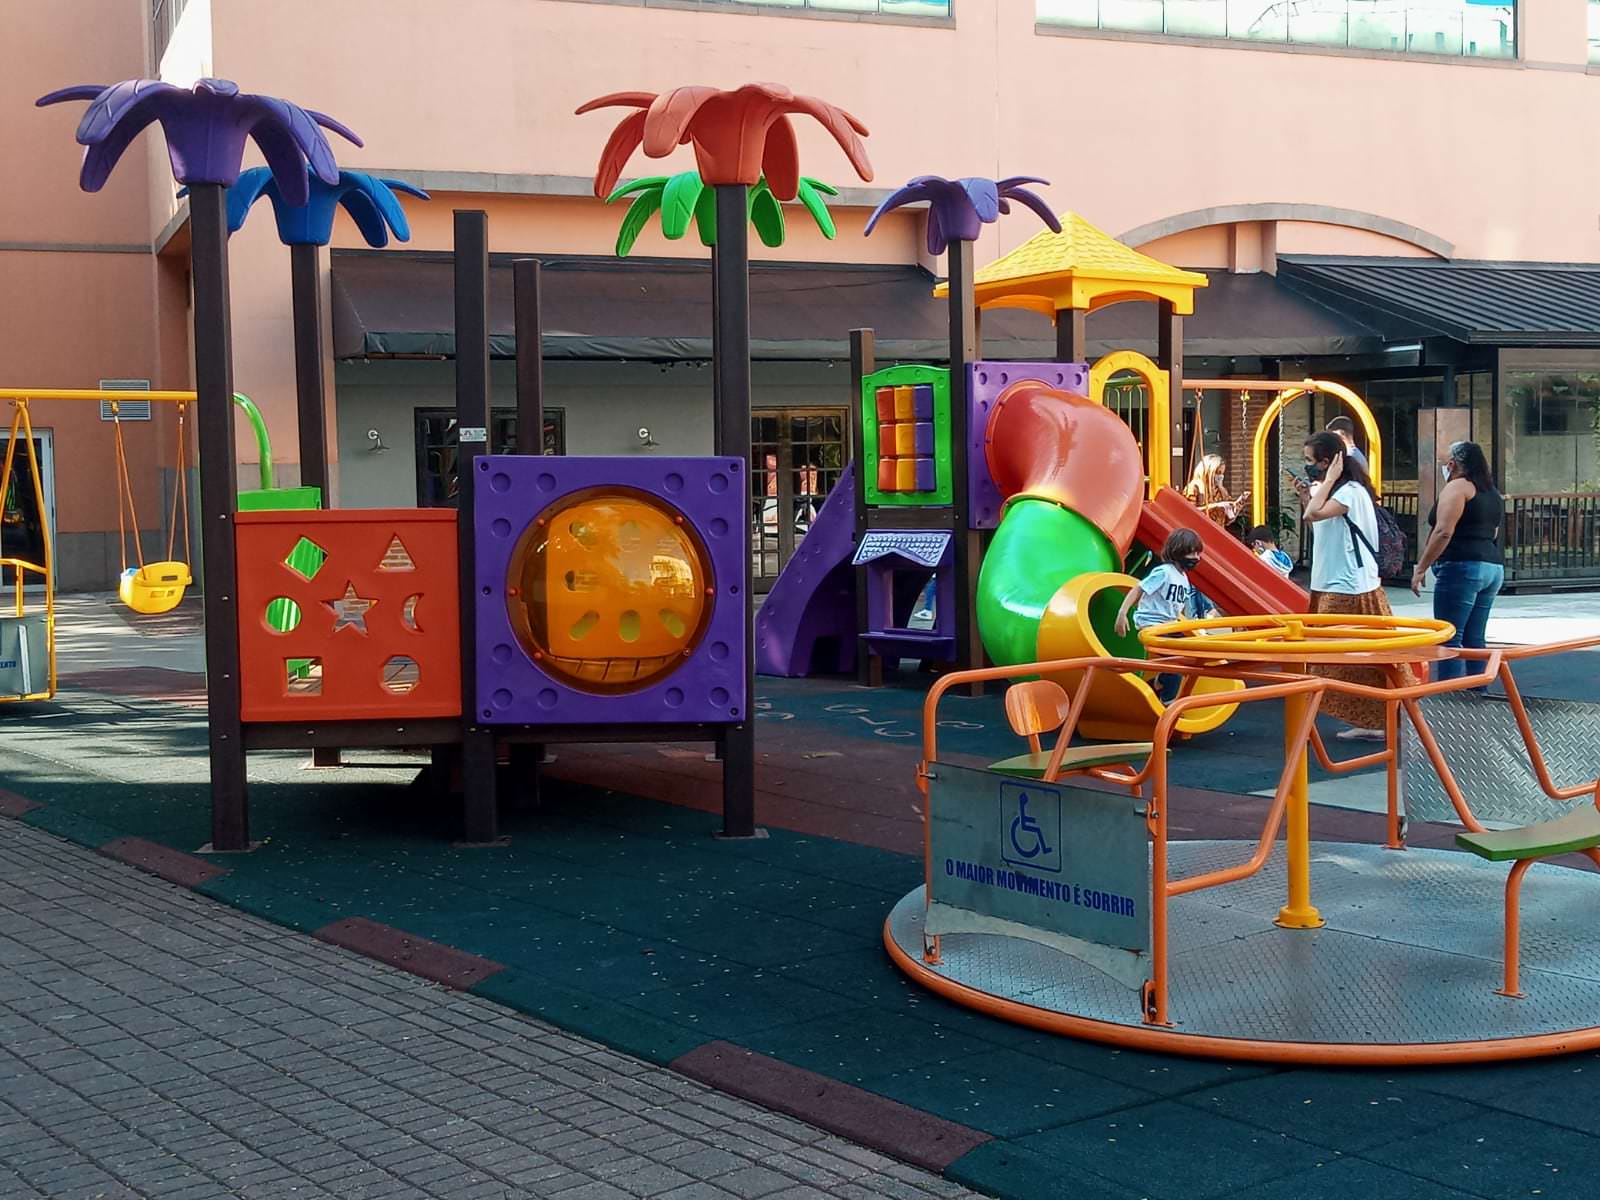 مساحة متعددة الأغراض في بارا تحتوي على ألعاب شاملة للأطفال مع الكراسي المتحركة. صور: الكشف.